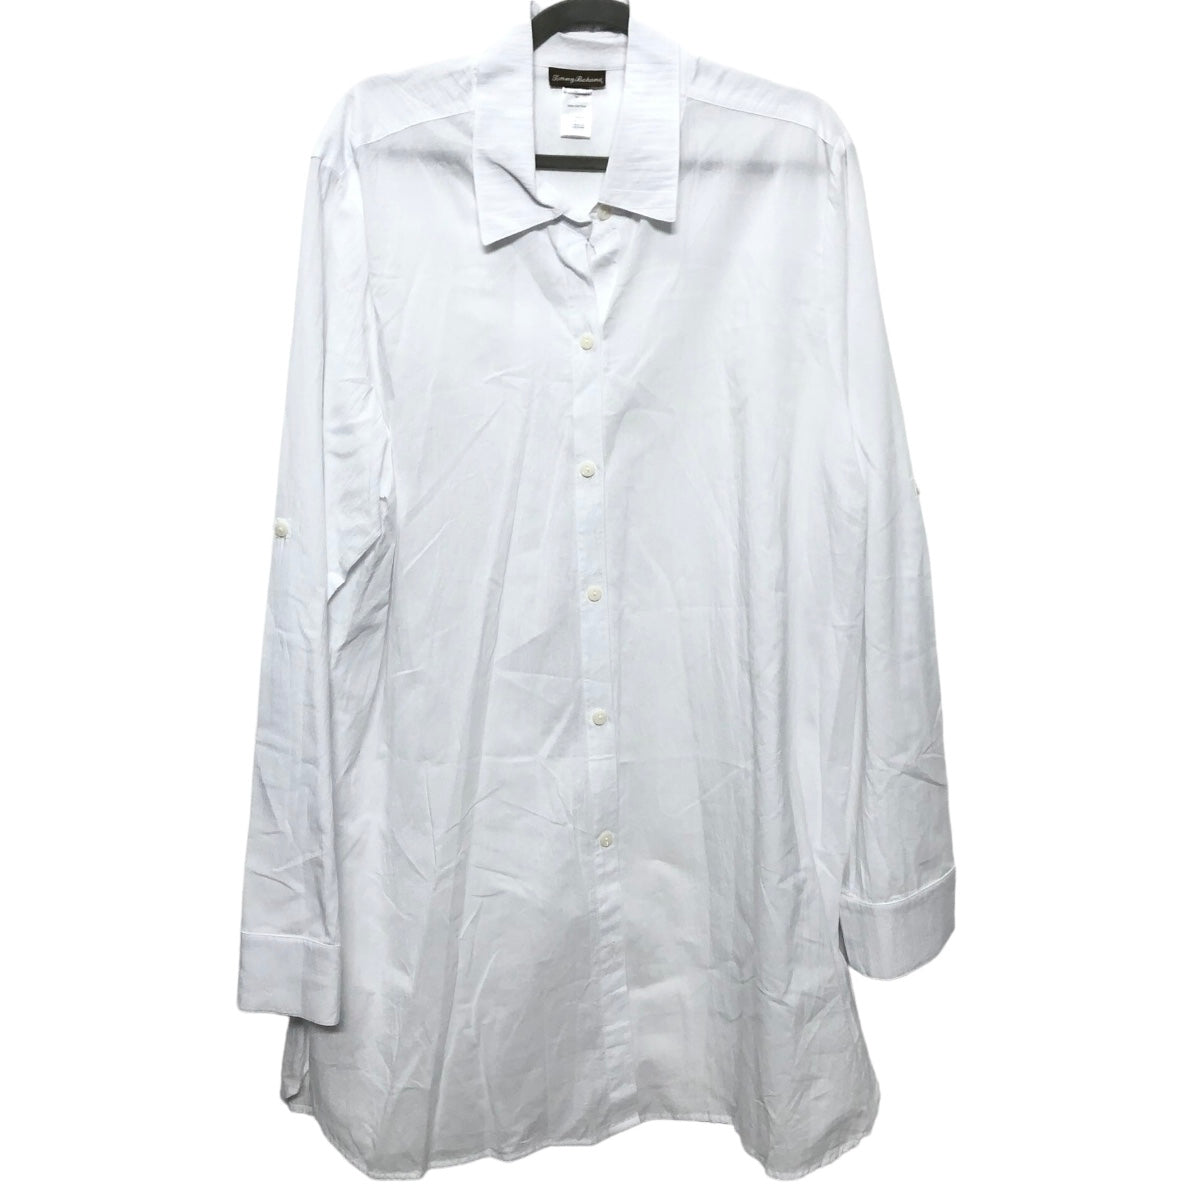 White Tunic Long Sleeve Tommy Bahama, Size 3x